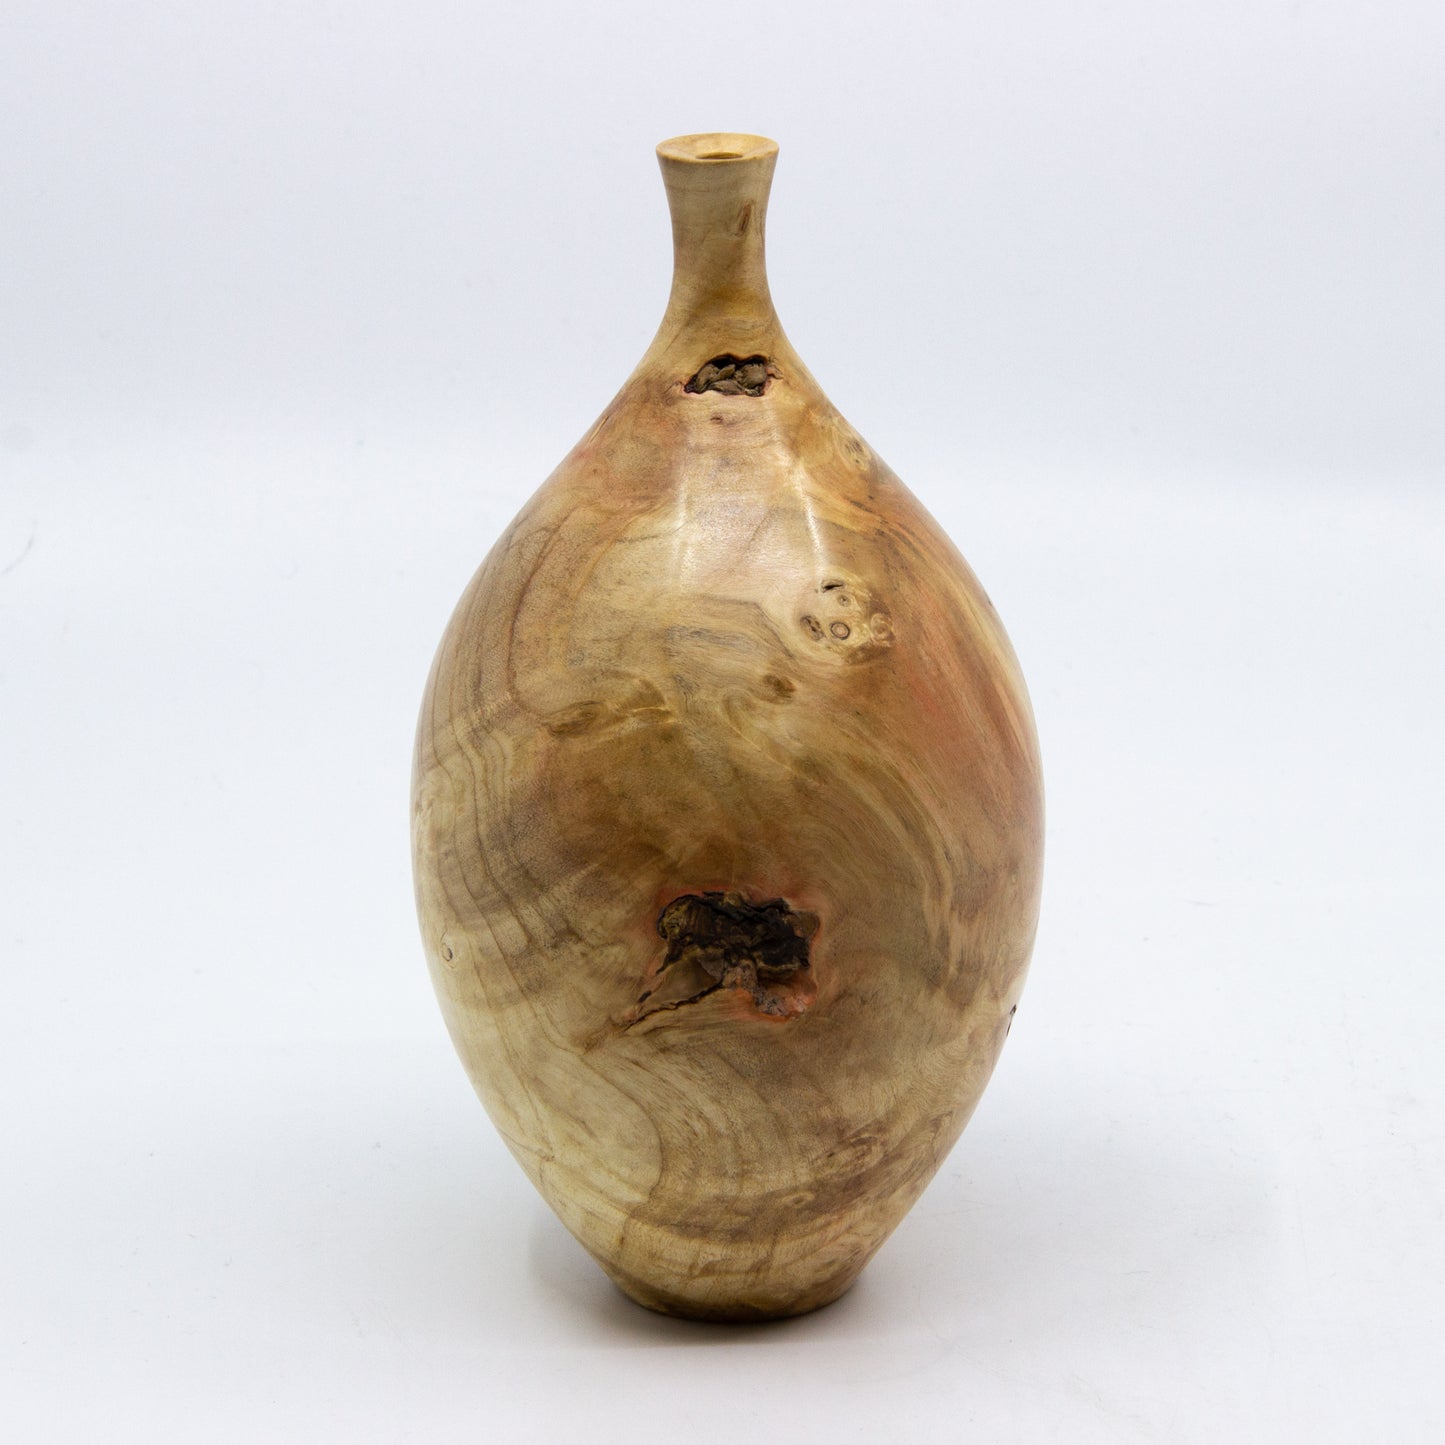 Wood Turned Bud Vases